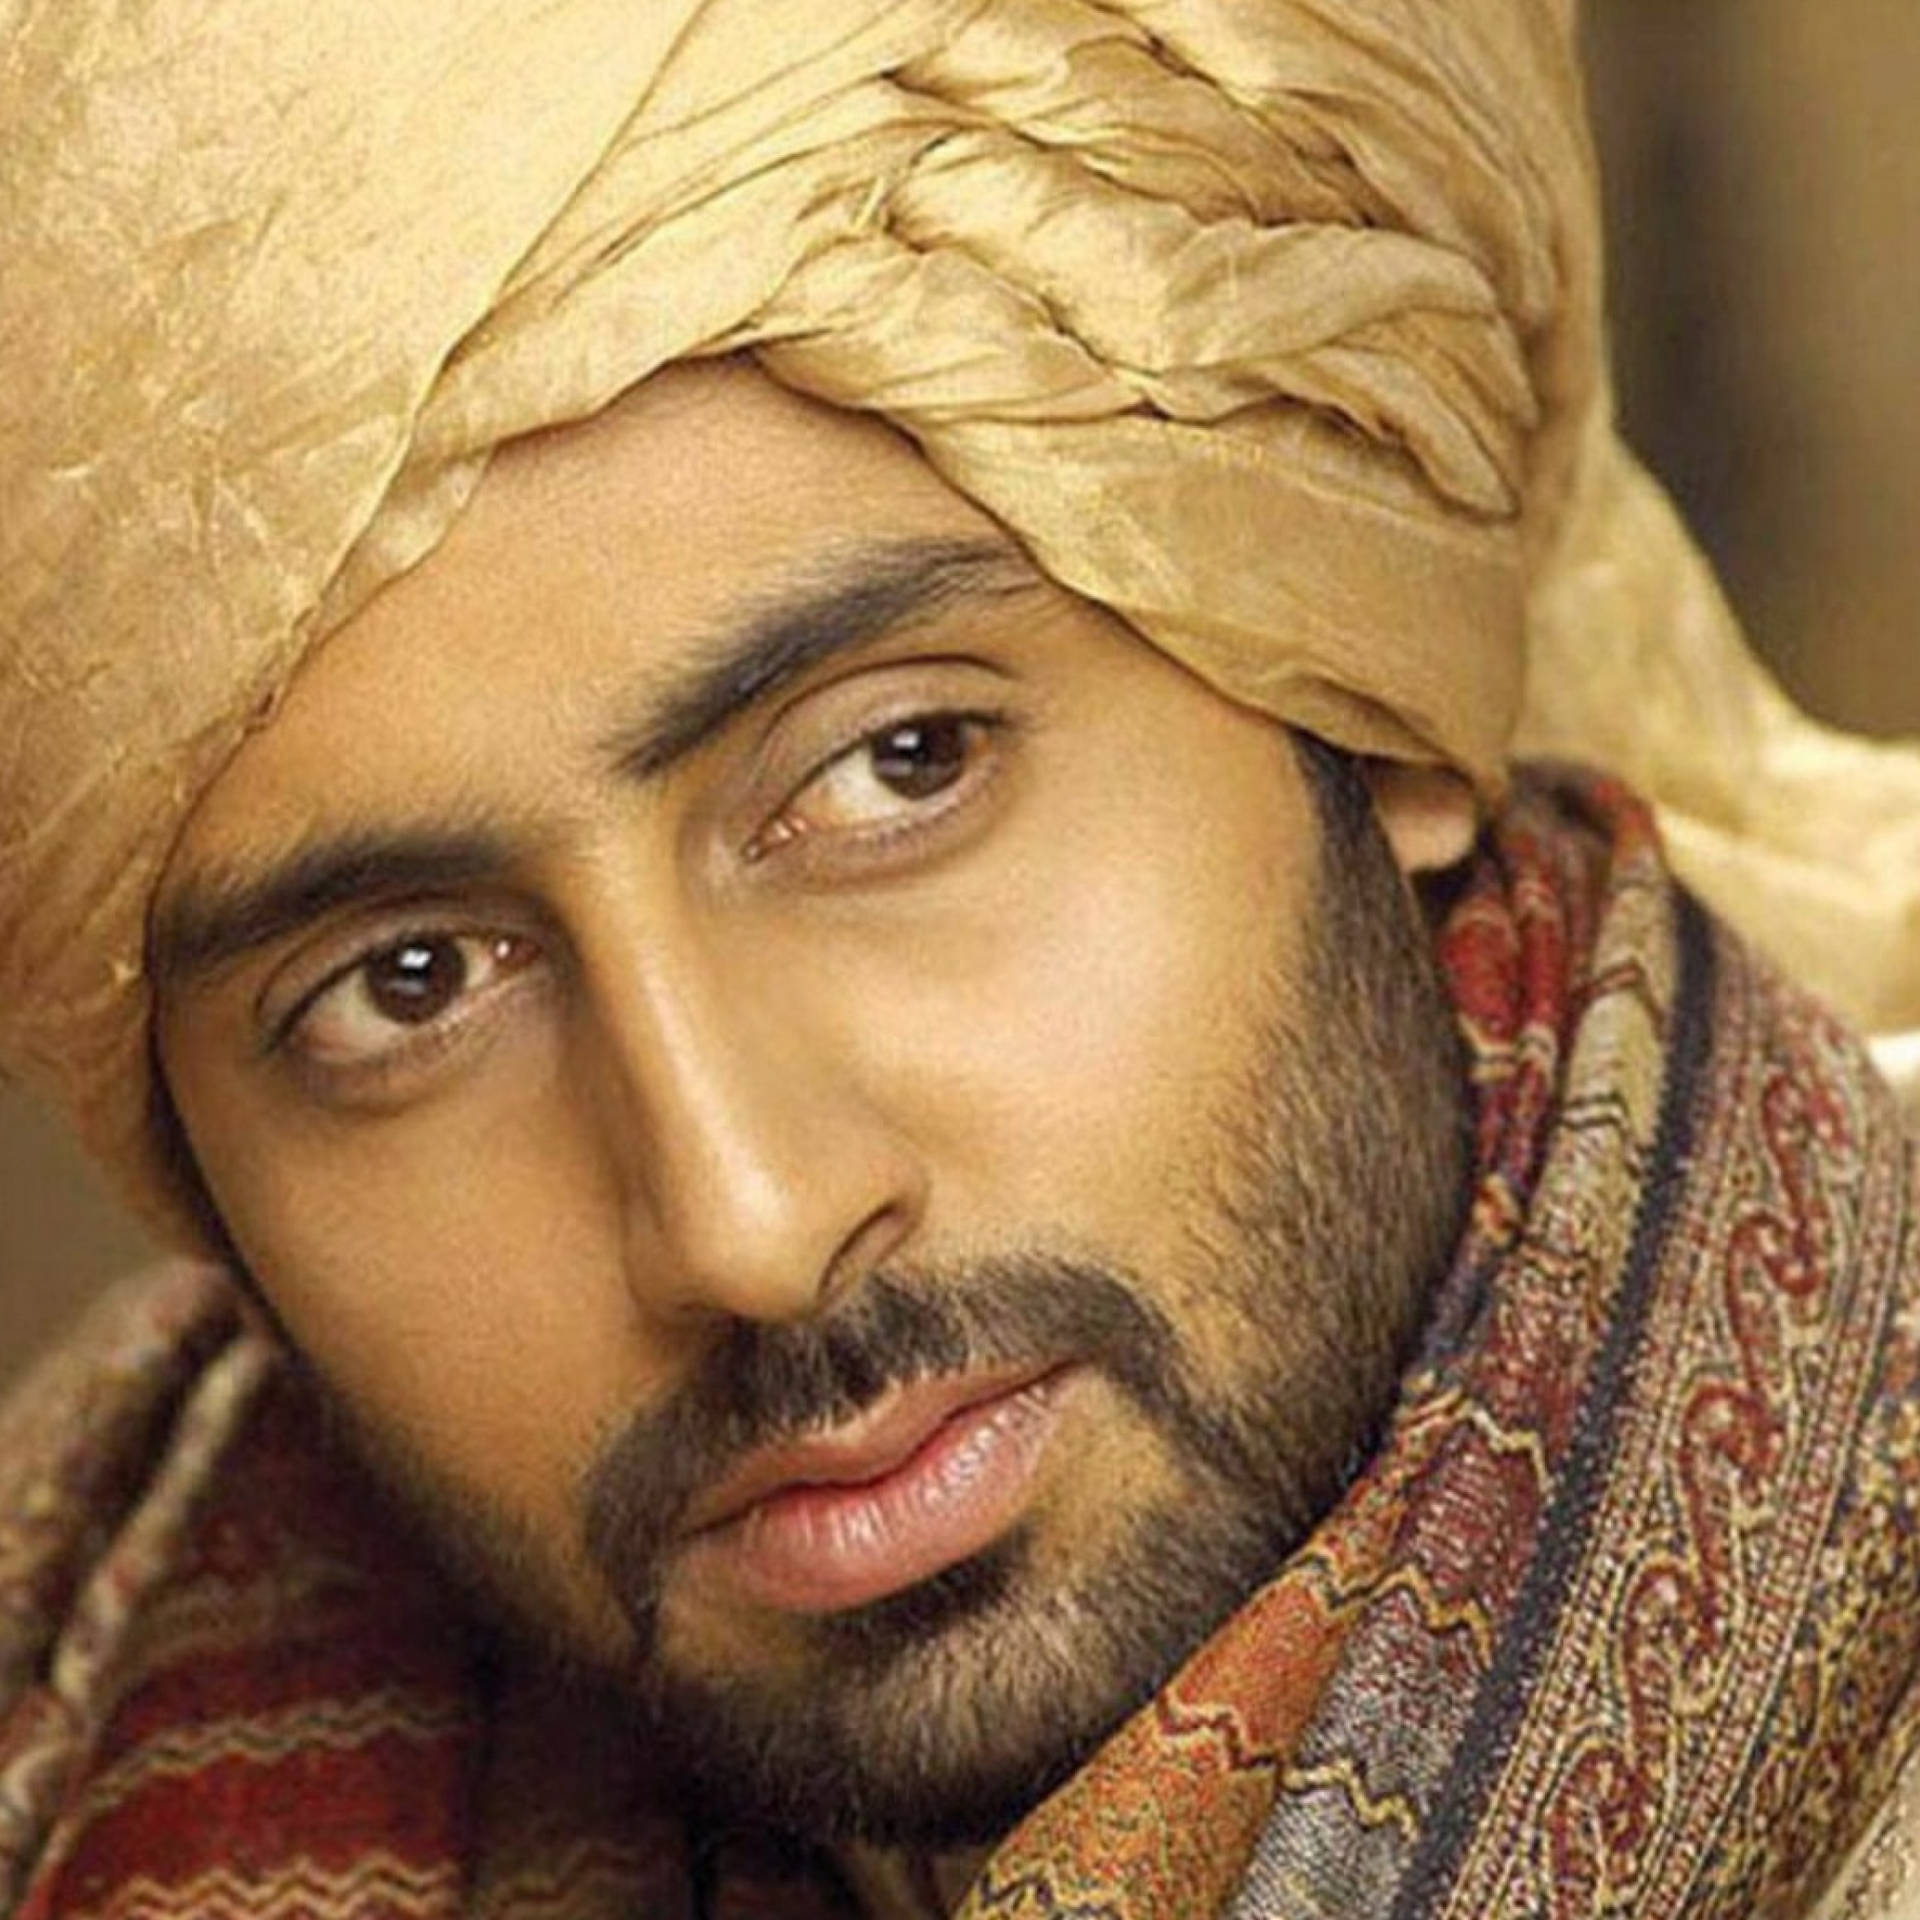 Abhishek Bachchan iført indiske klæder giver en smuk farve til din skærm. Wallpaper